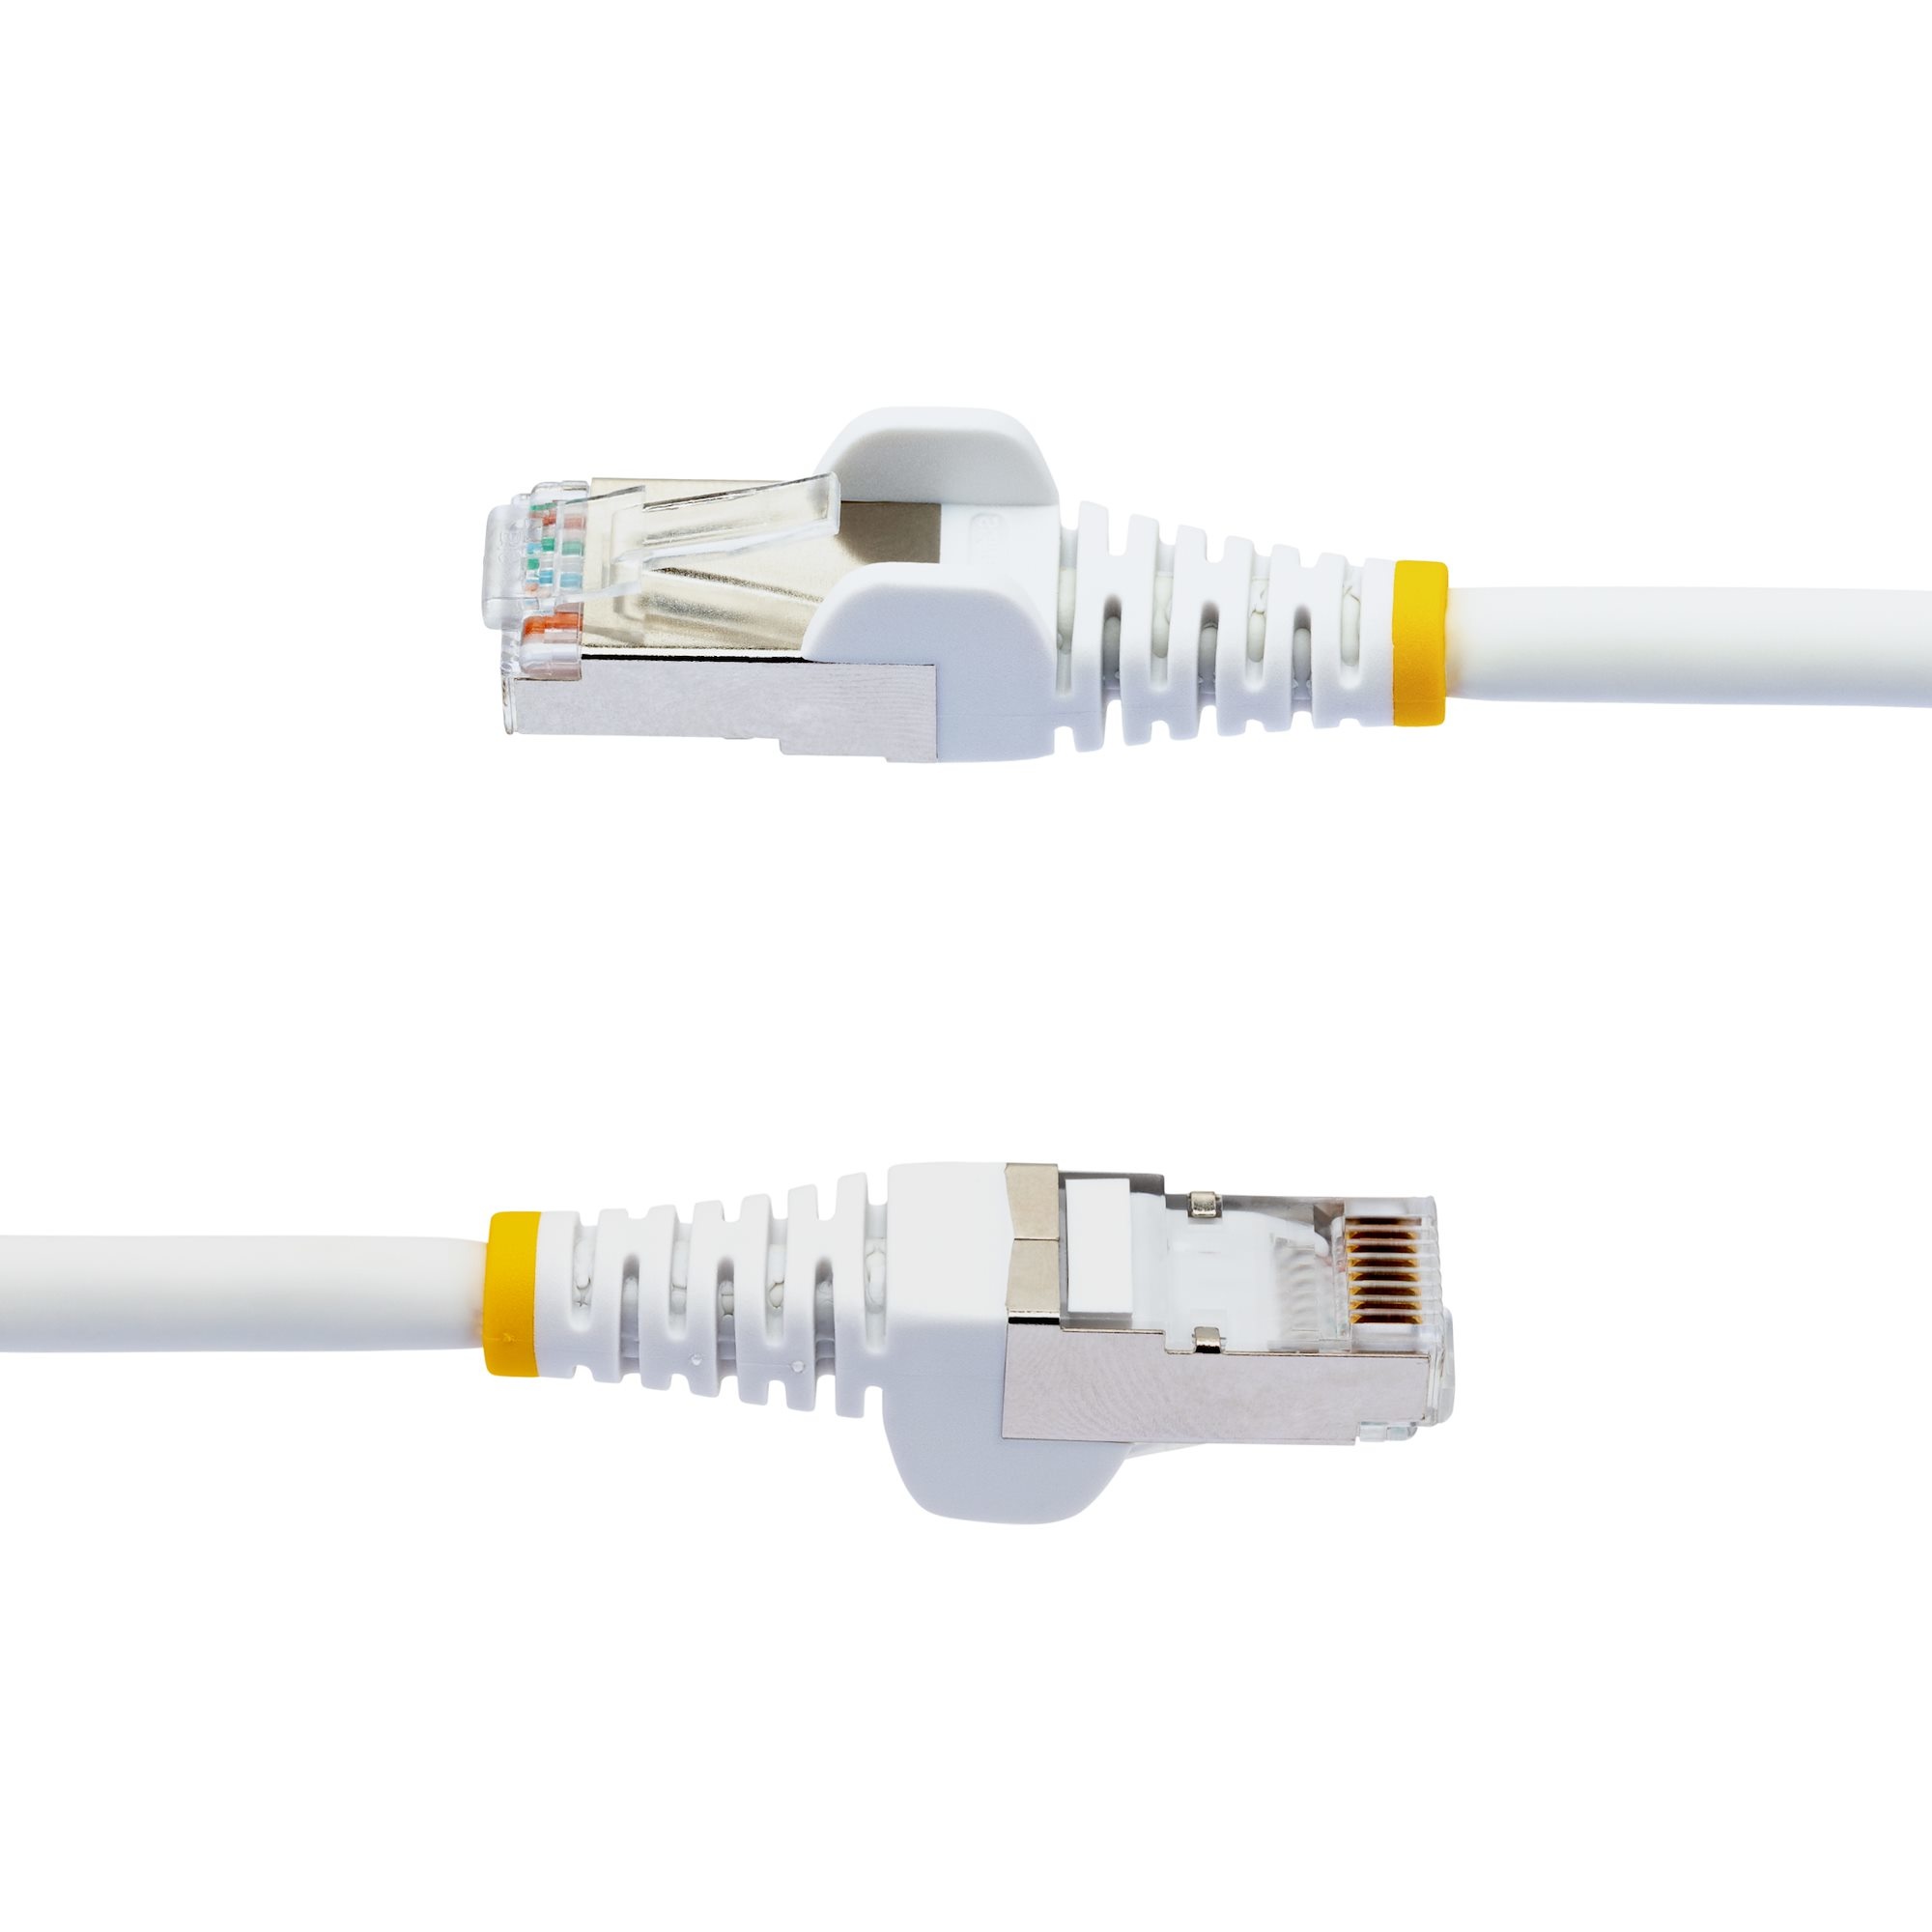 1m LSZH CAT6a Ethernet Cable - White thumbnail